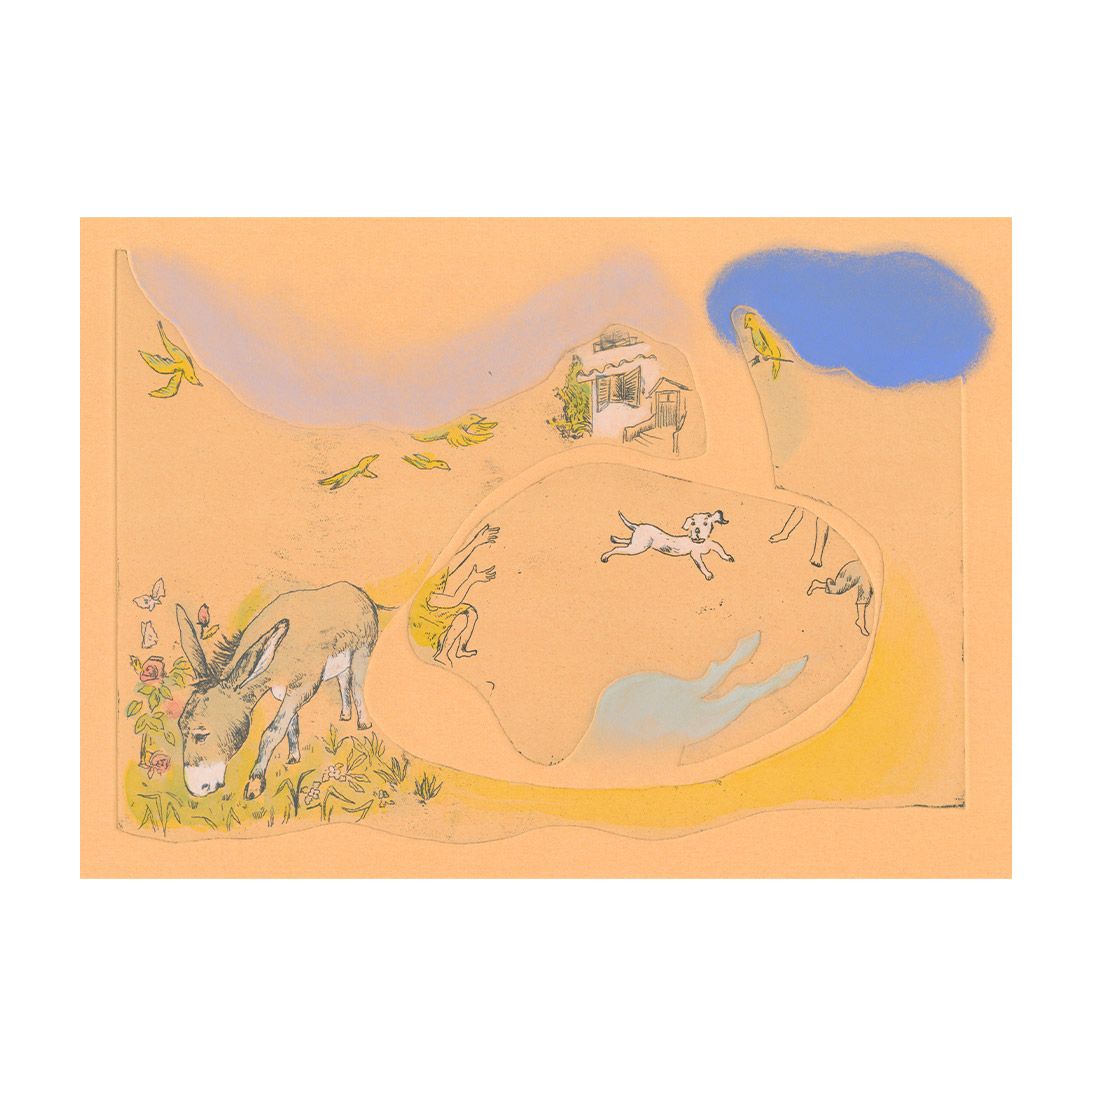  山本容子作(ヤマモトヨウコ サク)/『カナリアが飛んだ』銅版画、手彩色